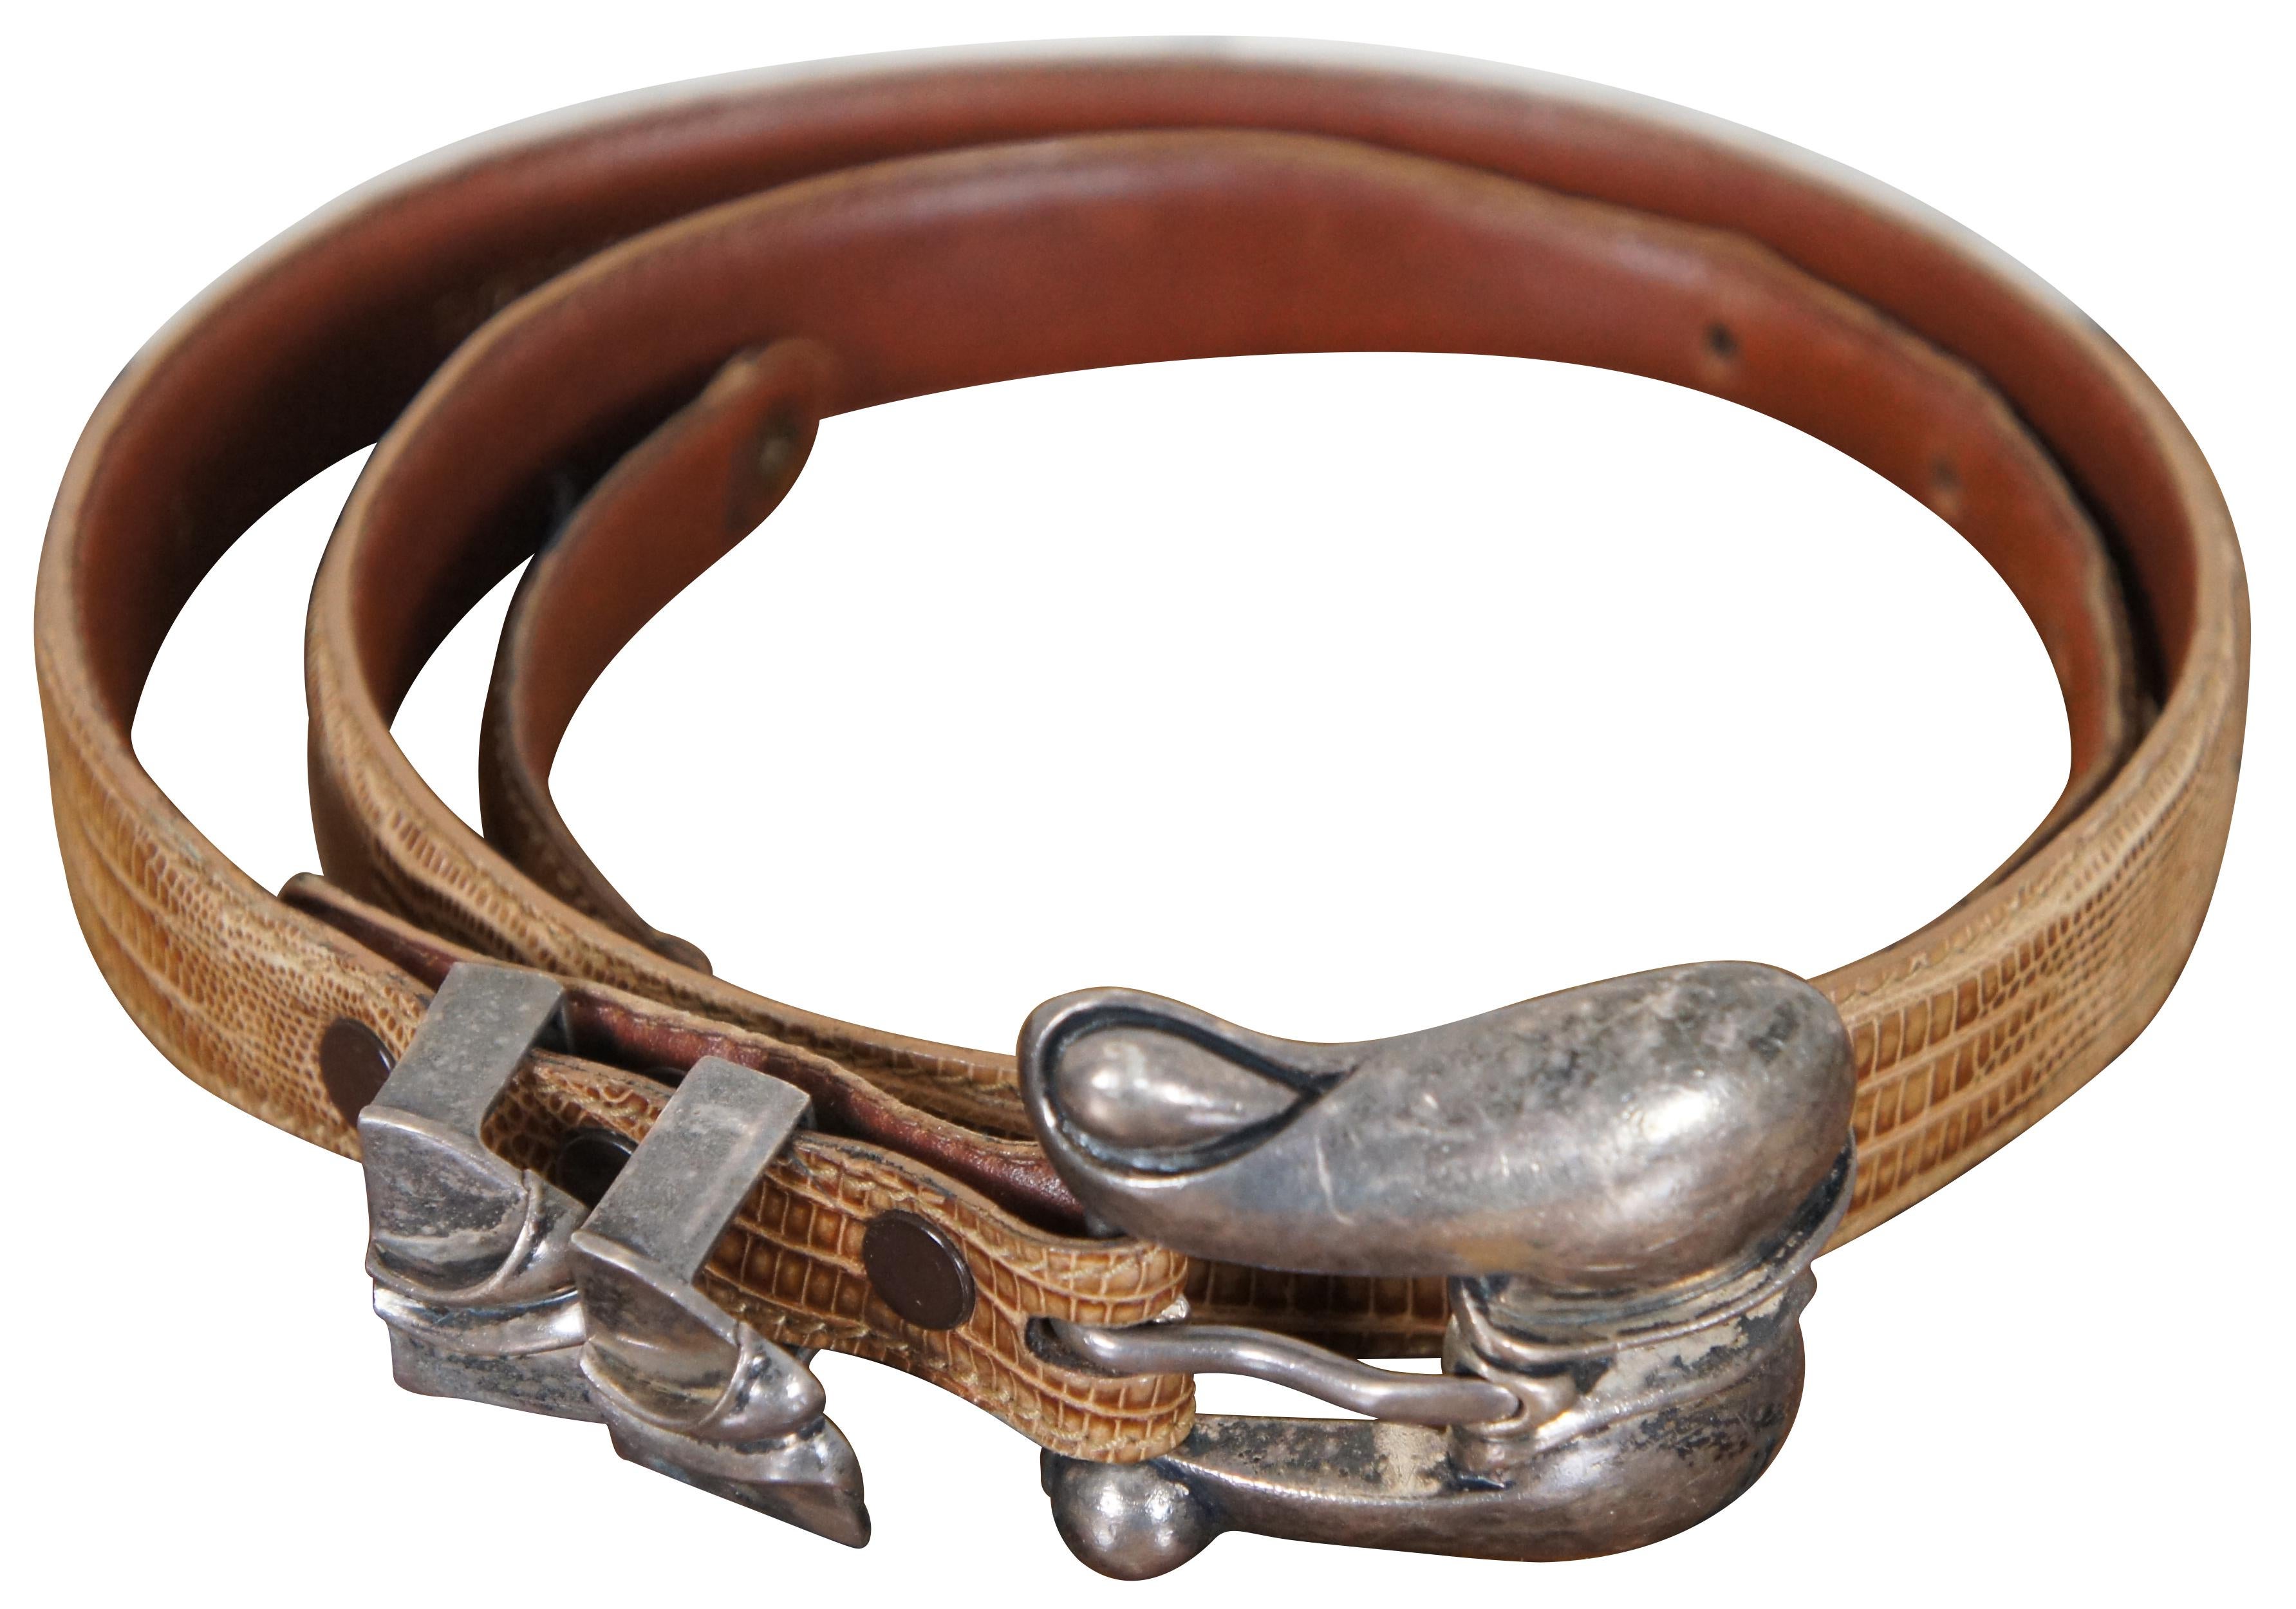 Vintage 1990 Barry Kieselstein-Cord ceinture marron clair en peau de lézard véritable avec boucle en argent sterling de style Art Nouveau numéro 290.

Mesures : 39